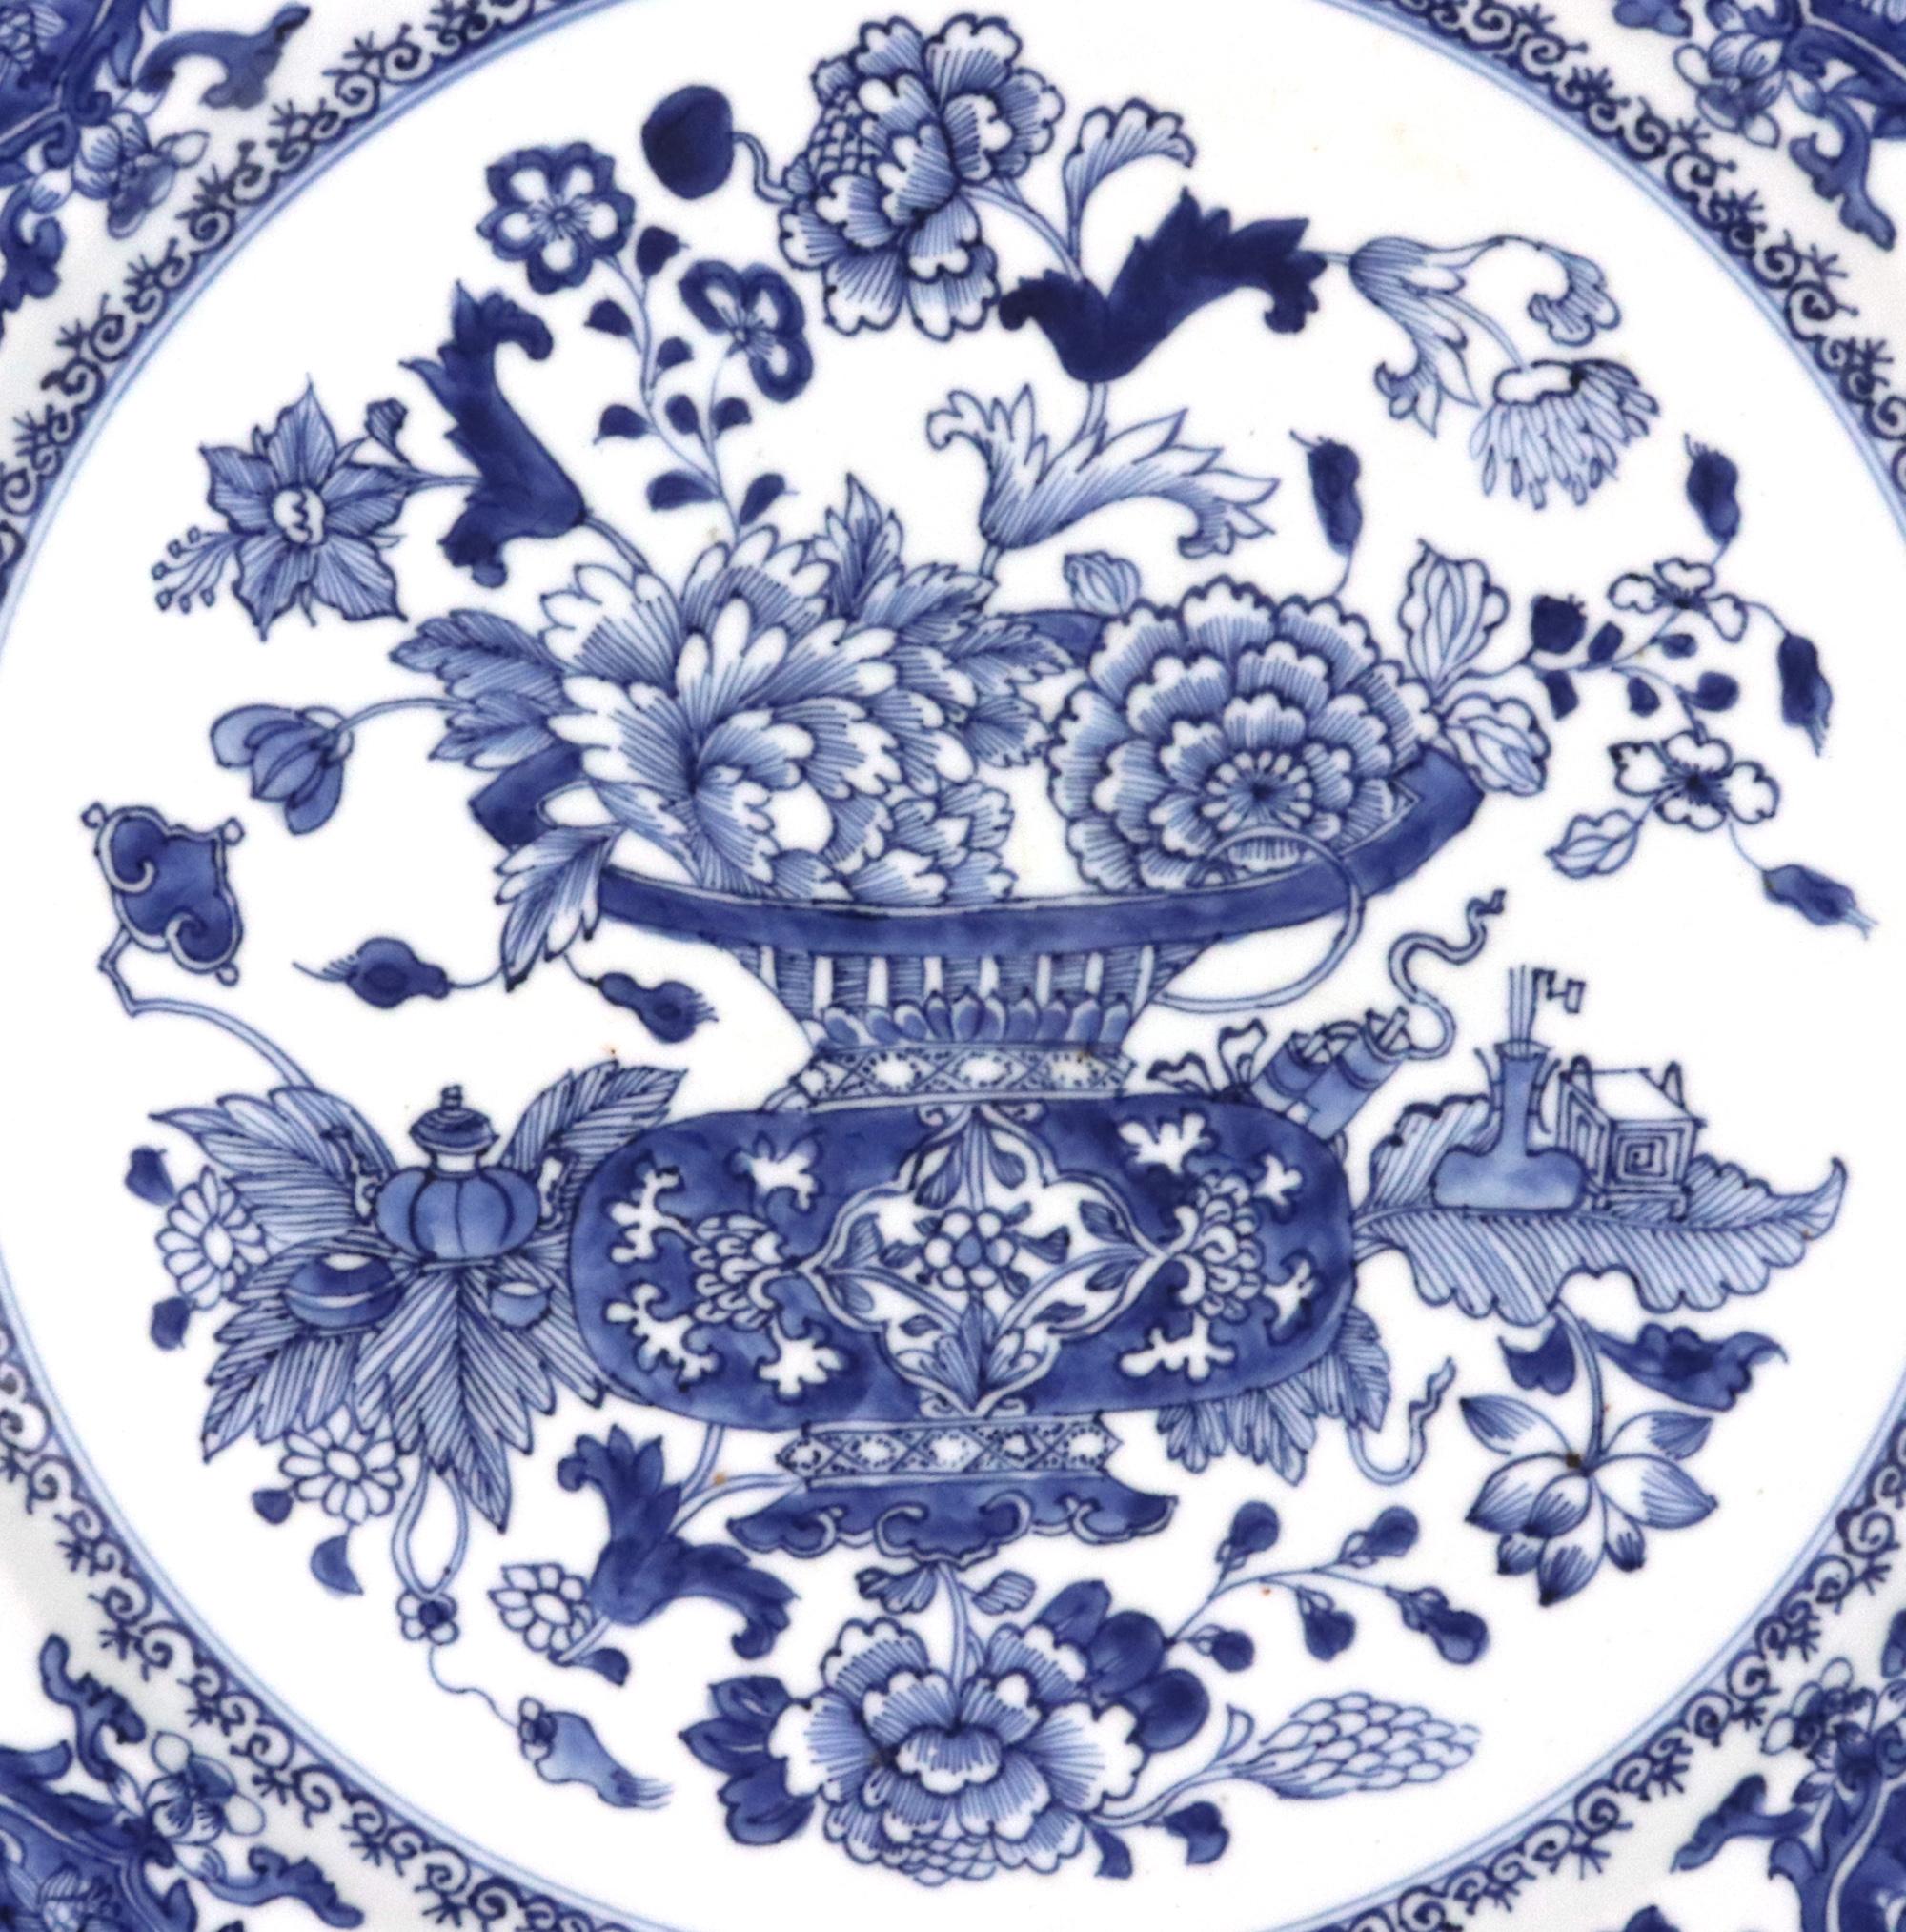 Plat en porcelaine d'exportation chinoise bleu sous glaçure,
Circa 1775

Ce plat en porcelaine d'exportation chinoise bien peinte en bleu sous glaçure est orné d'une grande censure centrale, la partie supérieure ajourée étant remplie de plantes